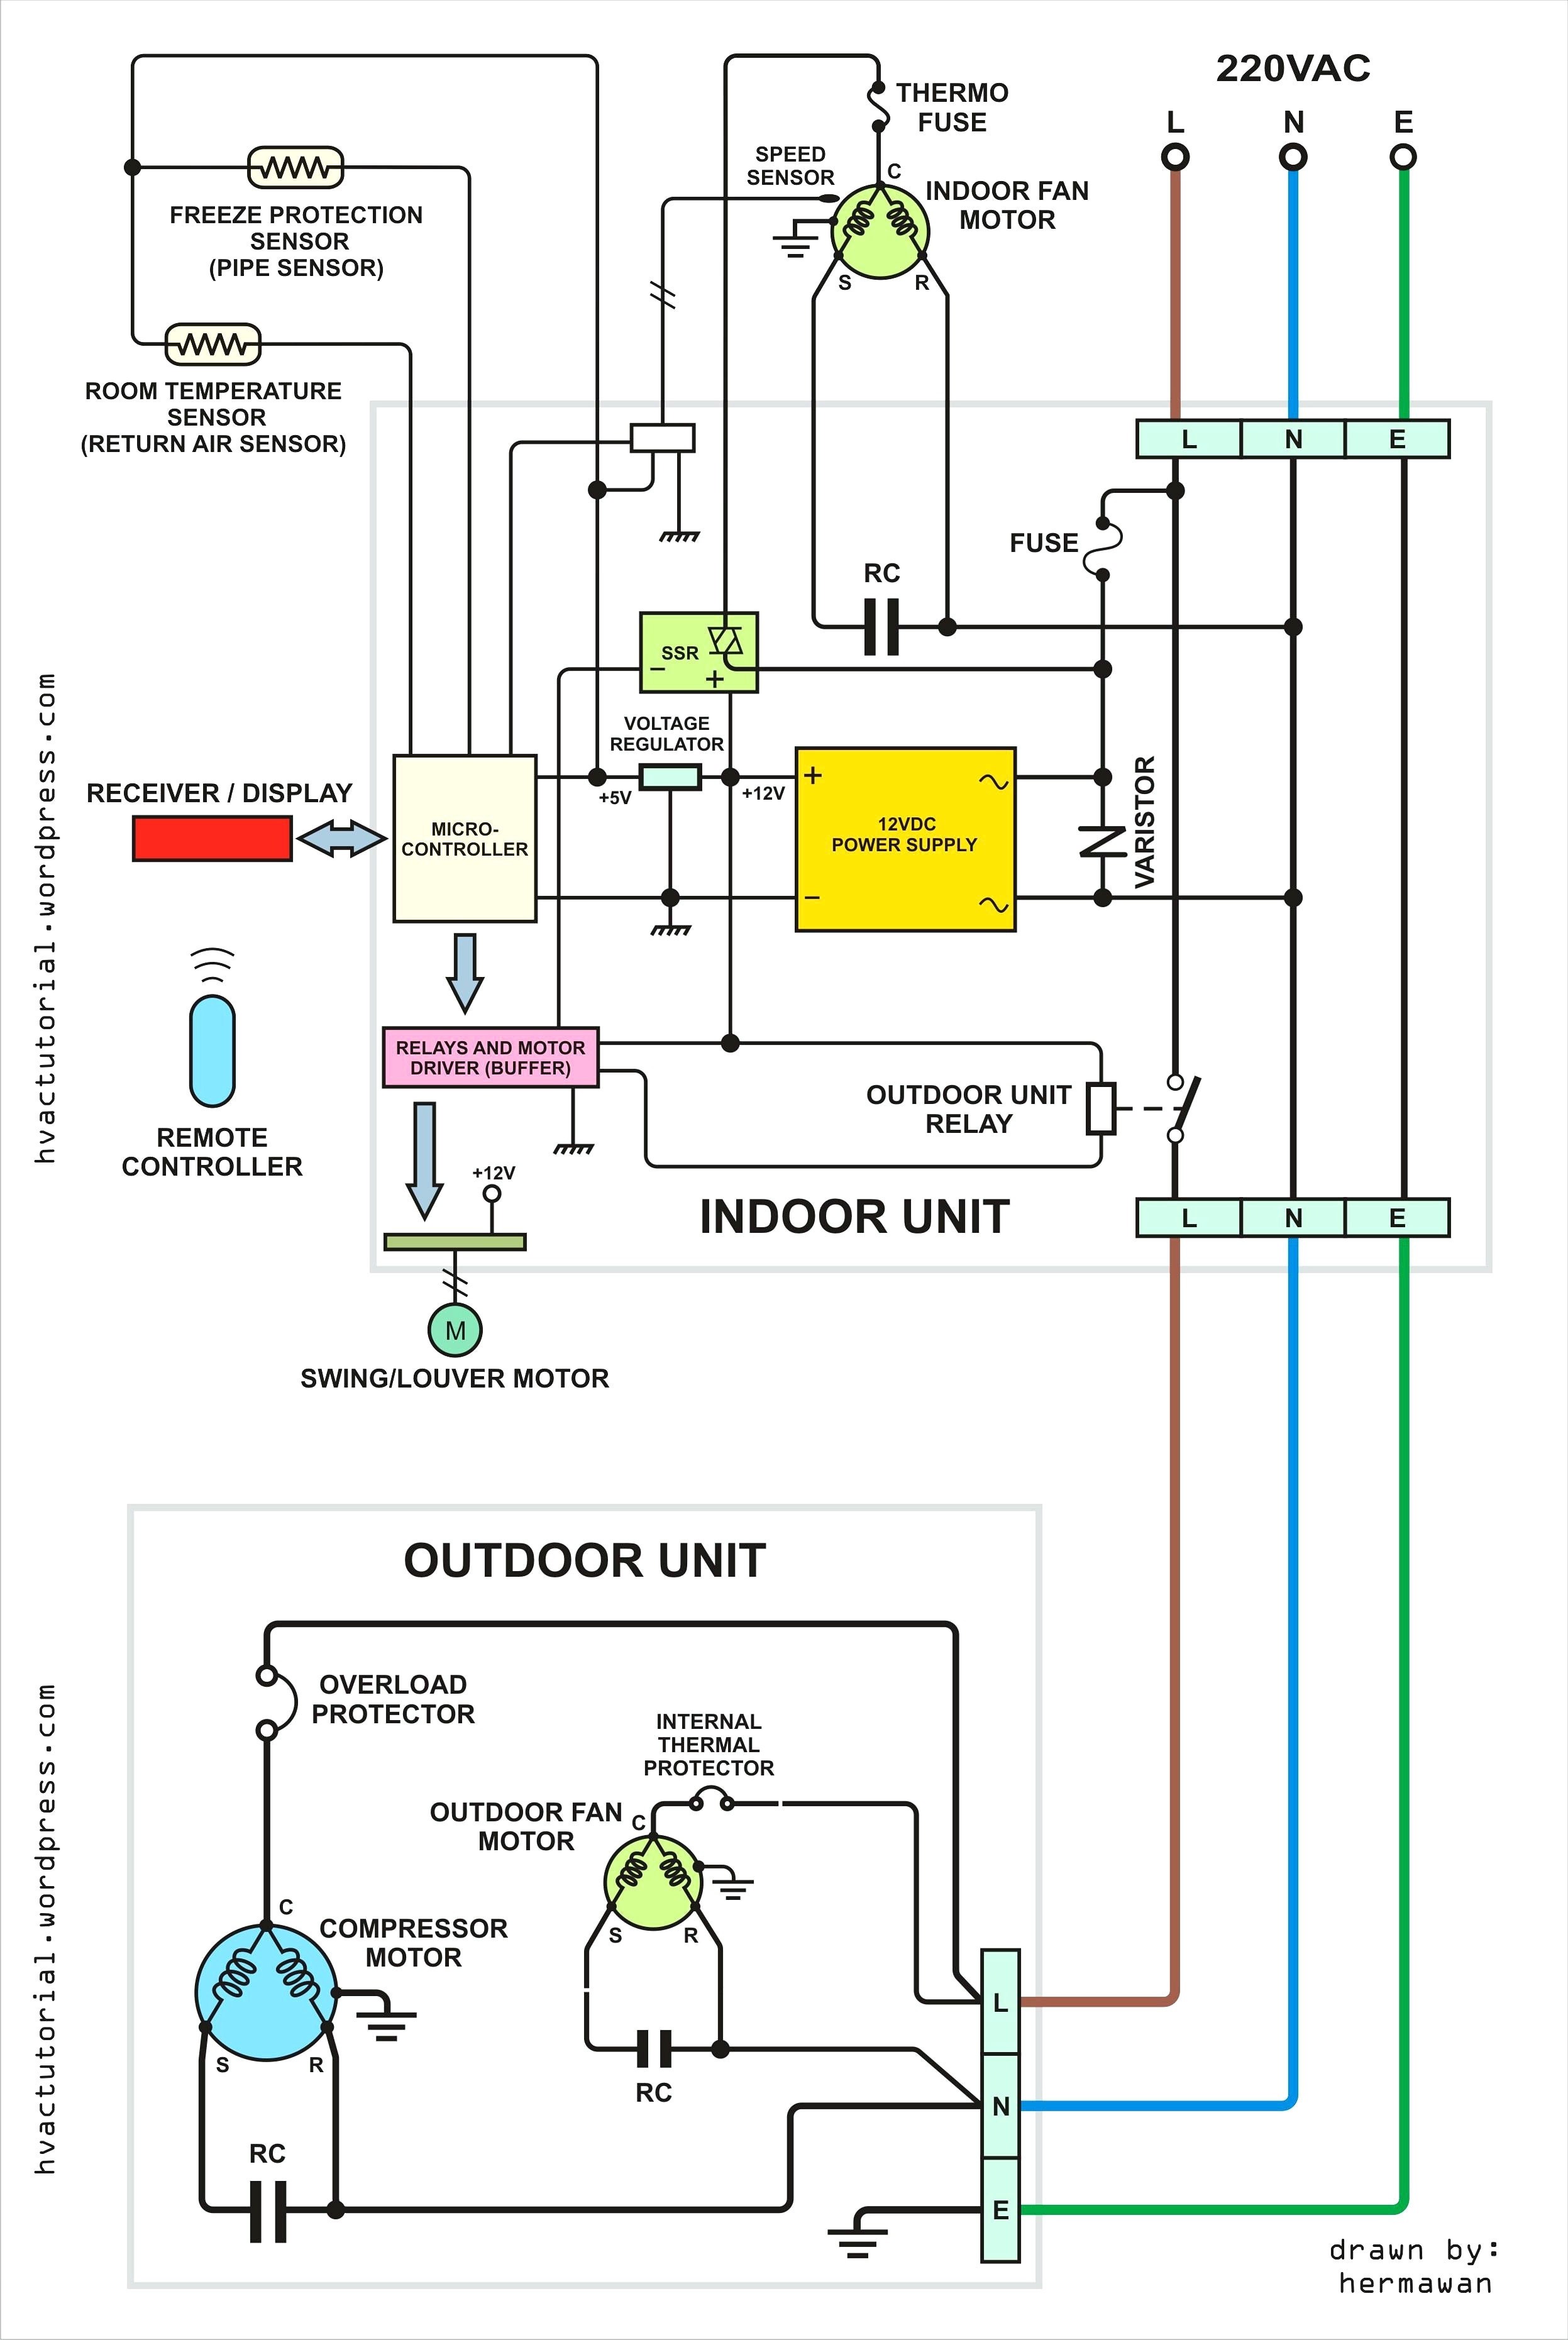 Electric Underfloor Heating Wiring Diagram Floor Wiring Diagram Of Electric Underfloor Heating Wiring Diagram